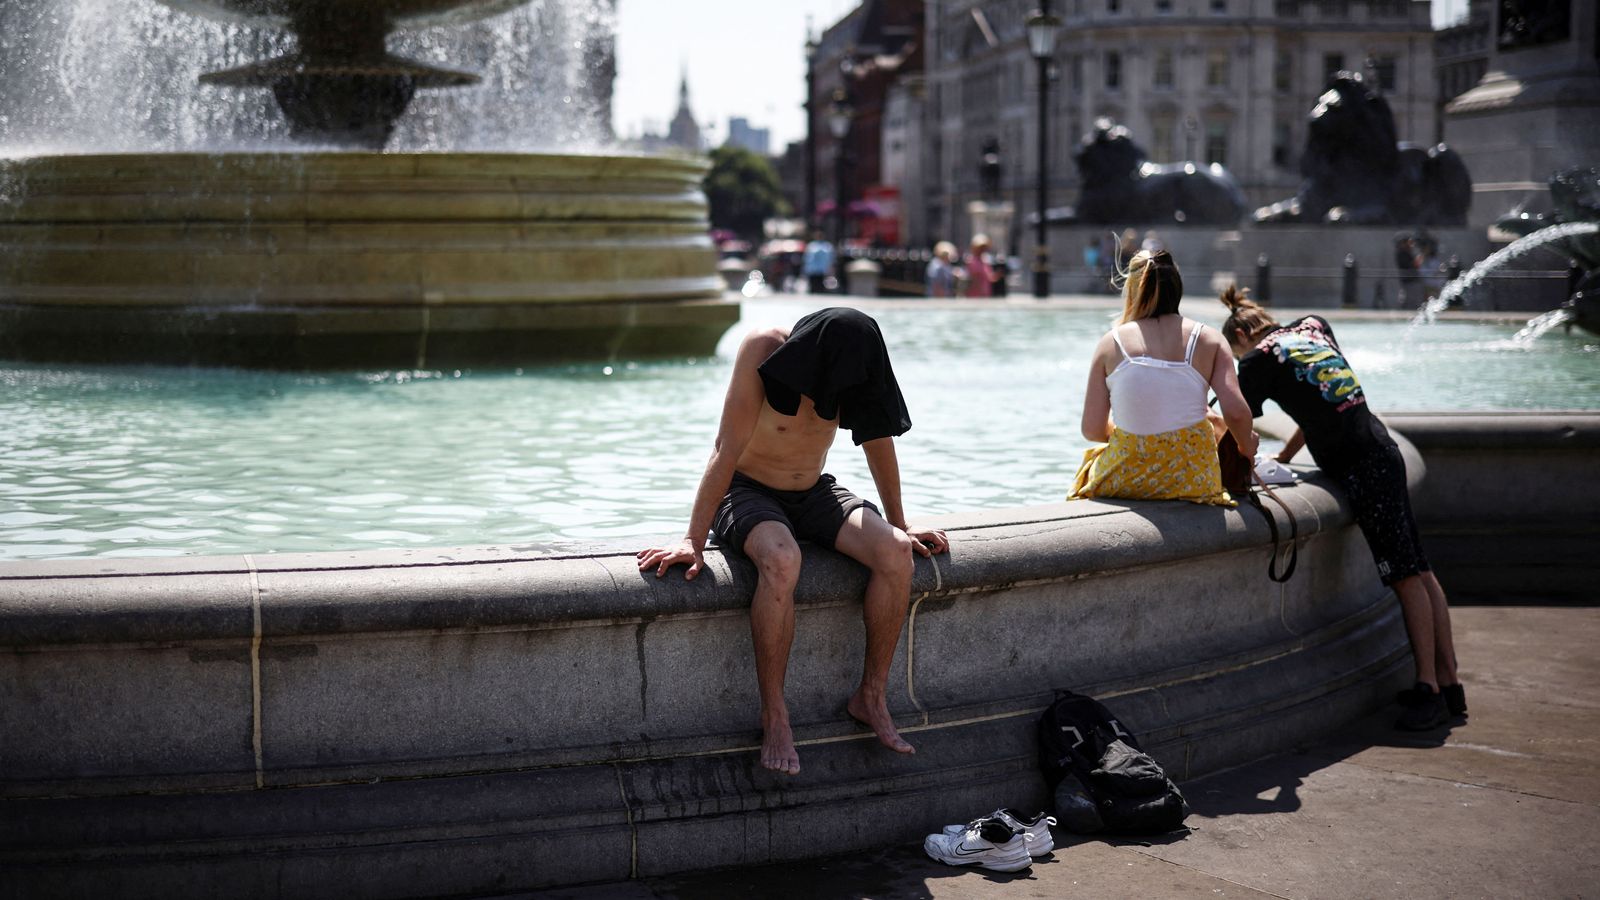 Лондон трябва да се адаптира към „новата реалност“, тъй като броят на дните над 30C нараства